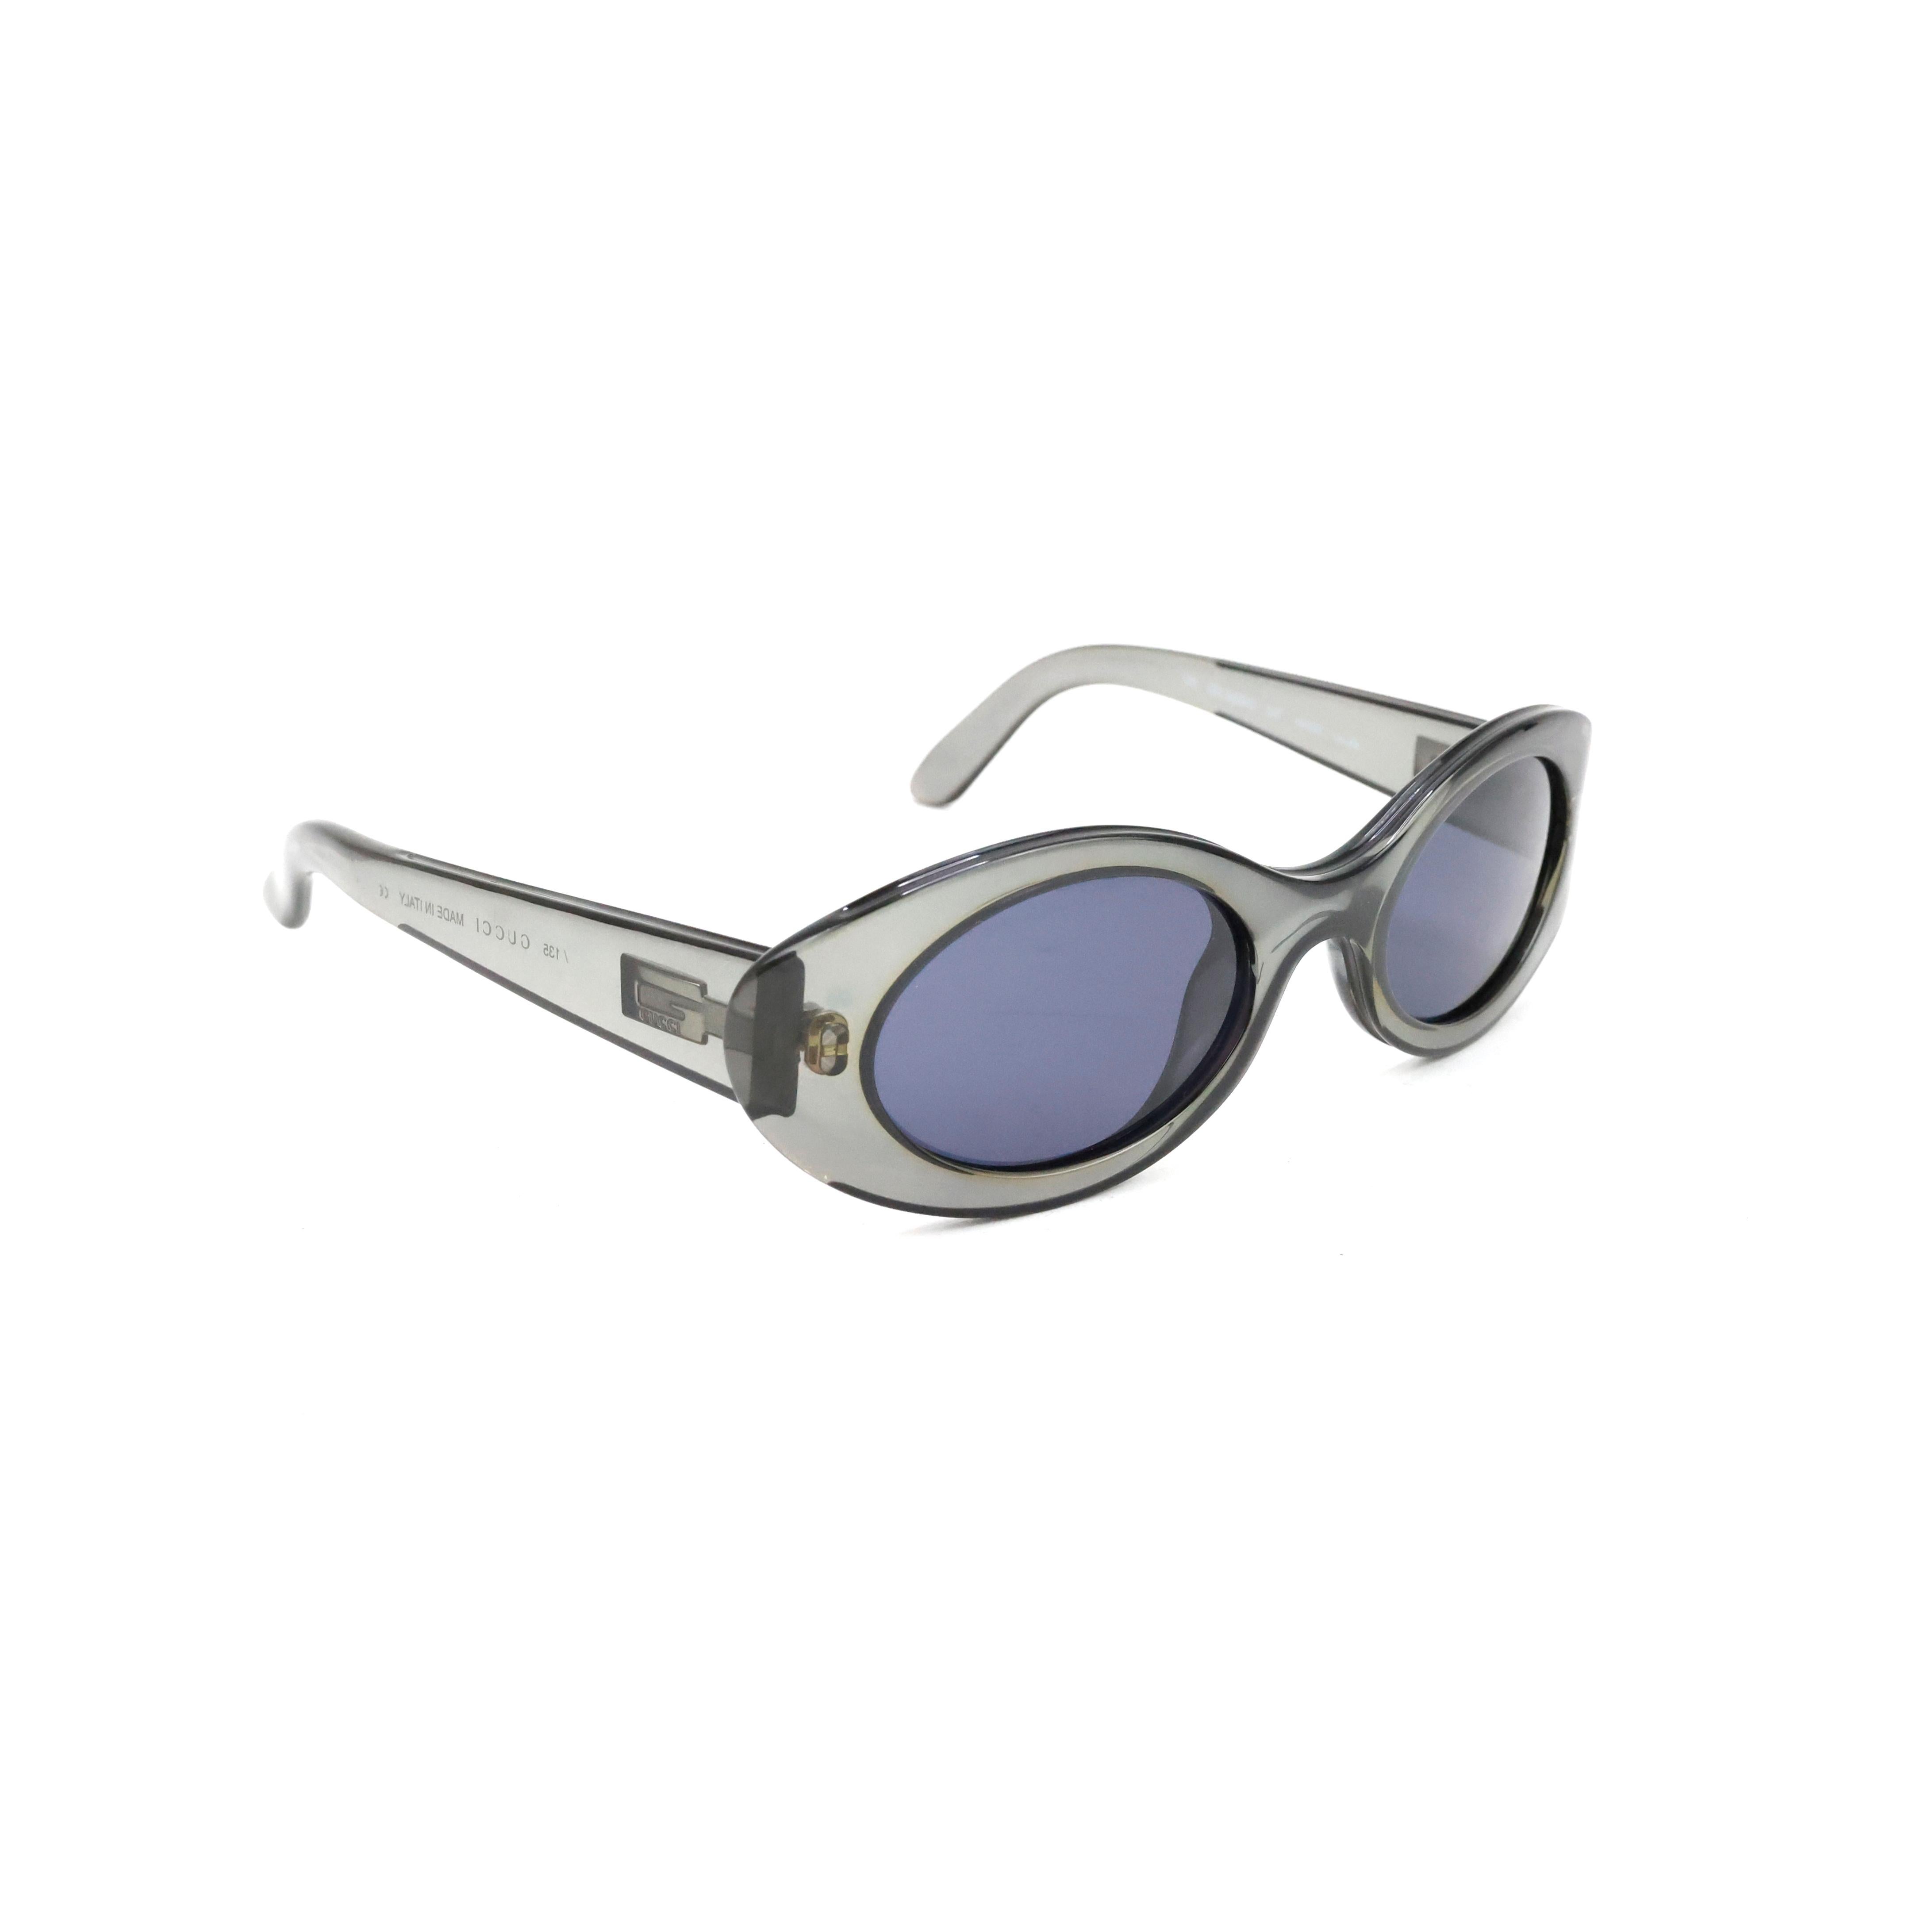 Gucci Sonnenbrille Farbe transparent/grau.

Bedingung:
Wirklich gut.

Verpackung/Zubehör:
Fall.